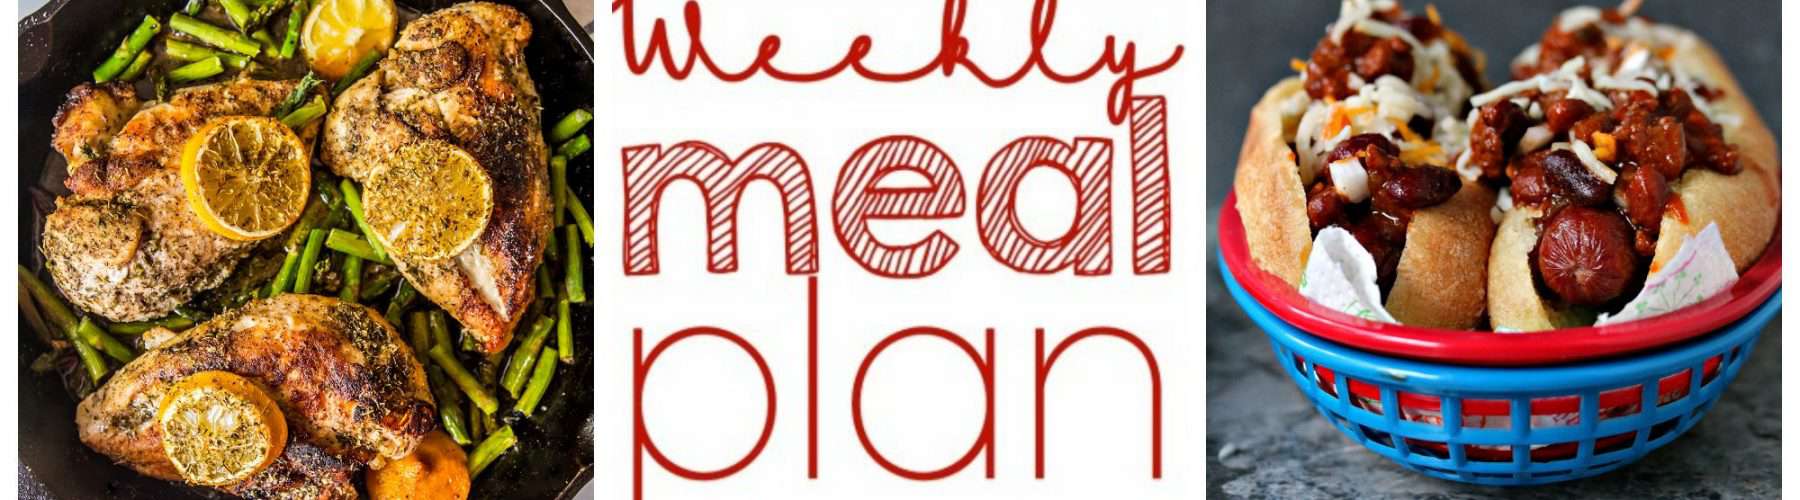 Weekly Menu Plan Week 8 from foodiewithfamily.com